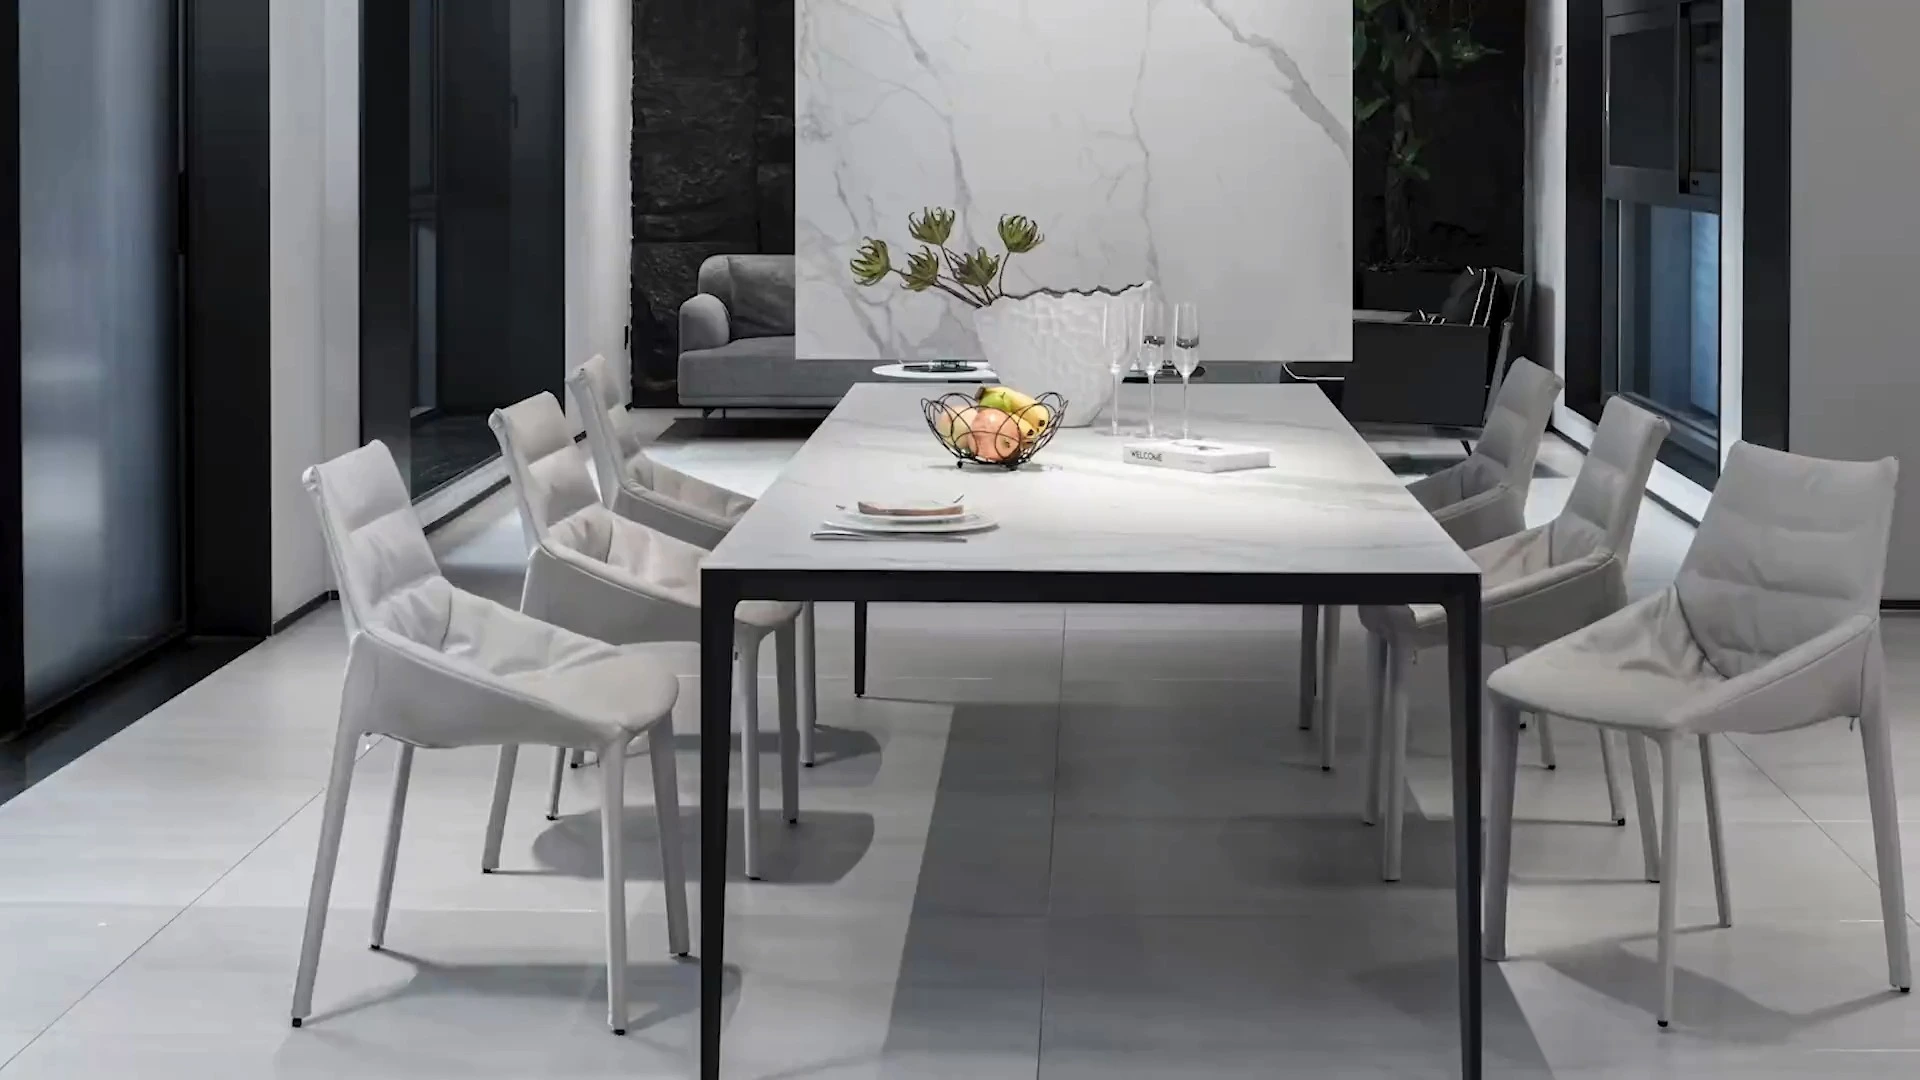 Իմացեք, թե ինչու է մեր BK CIANDRE կերամիկական սեղանը կատարյալ ընտրություն ձեզ համար [Marble Ceramic Table]